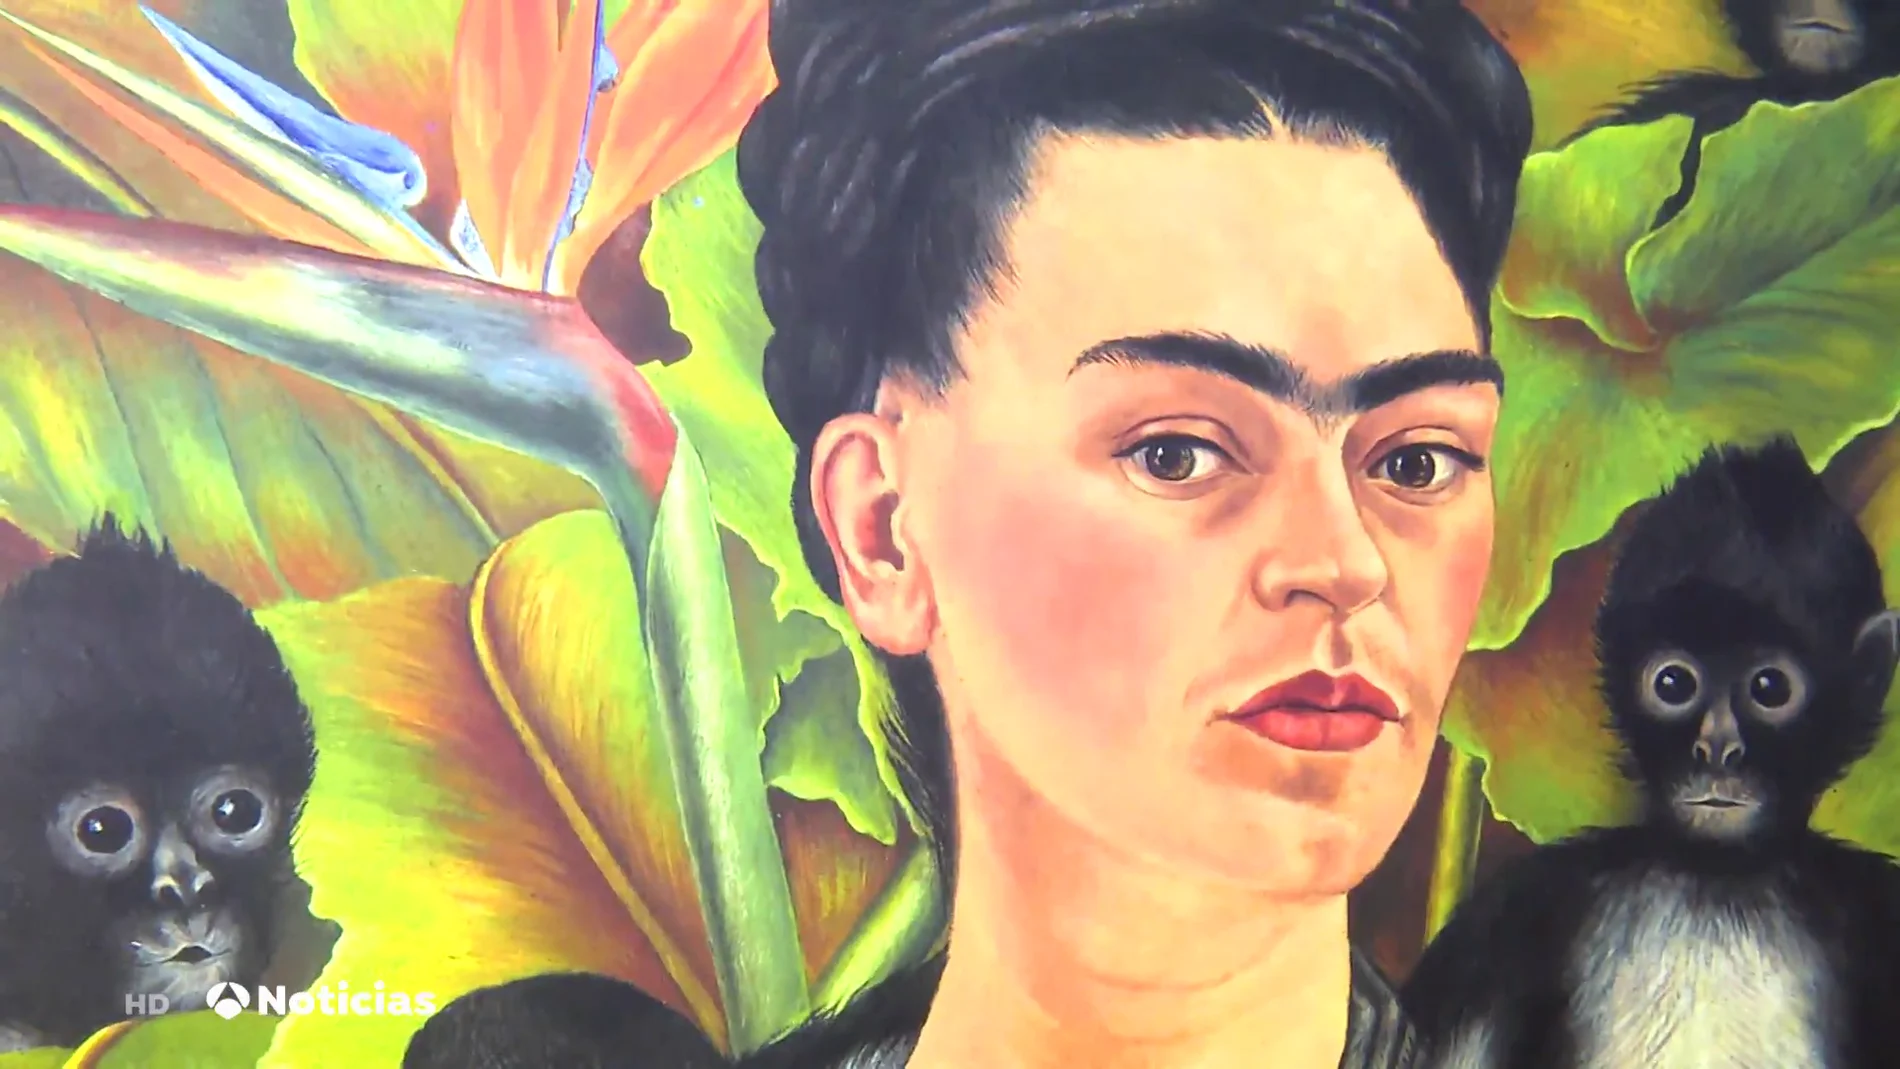 Frida Kahlo llega a España